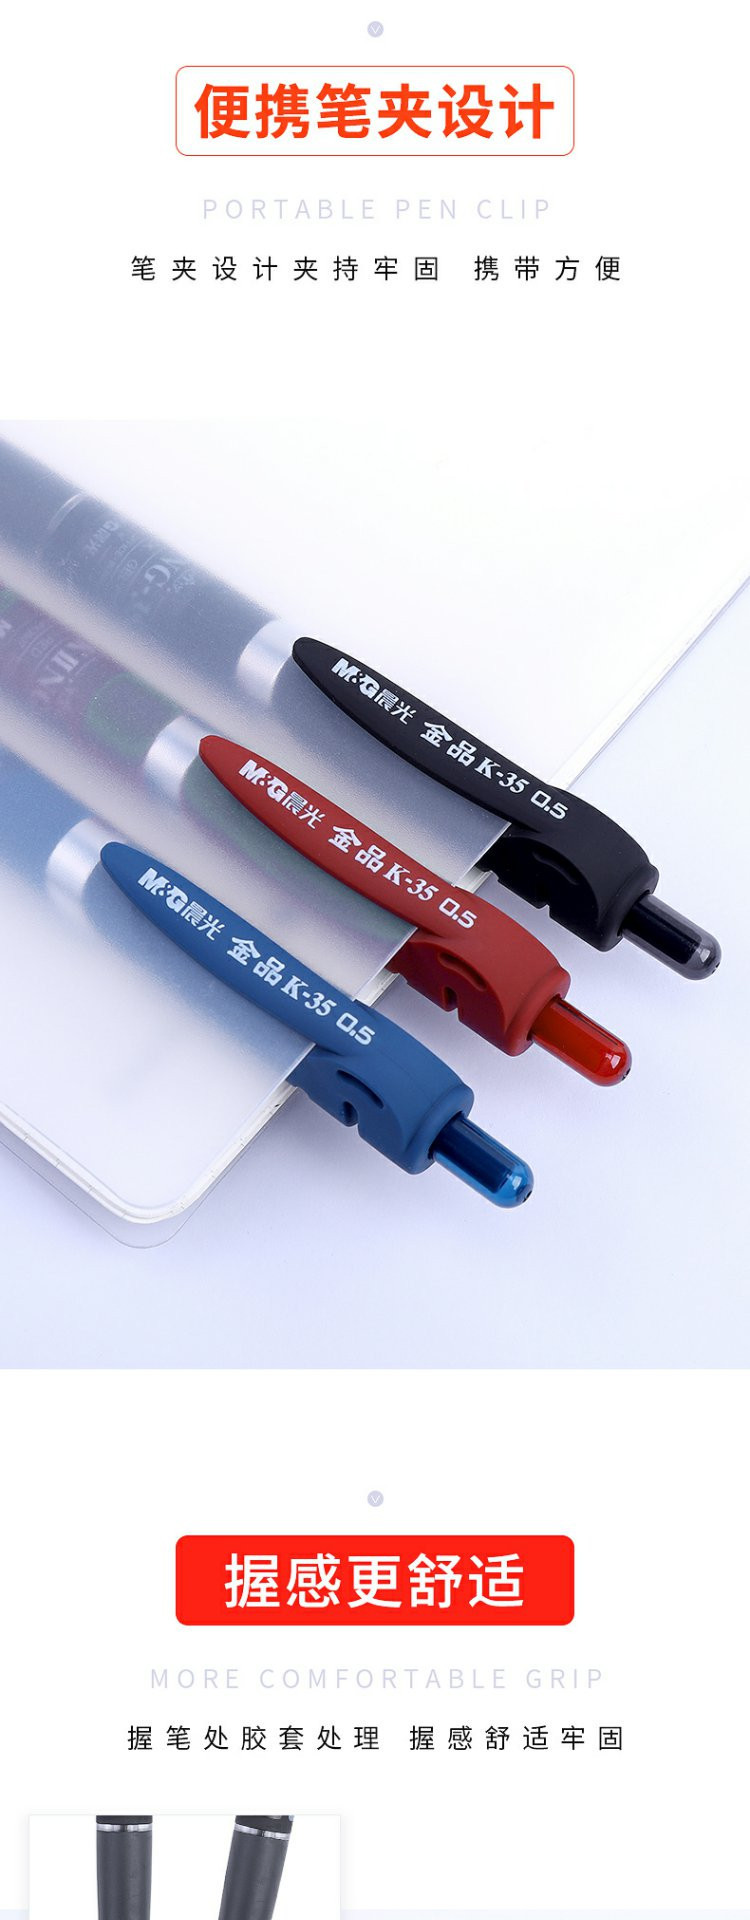 晨光/M&amp;G 晨光金品按动中性笔k3507学生用磨砂笔杆按压式黑色水笔0.5子D头多色可选